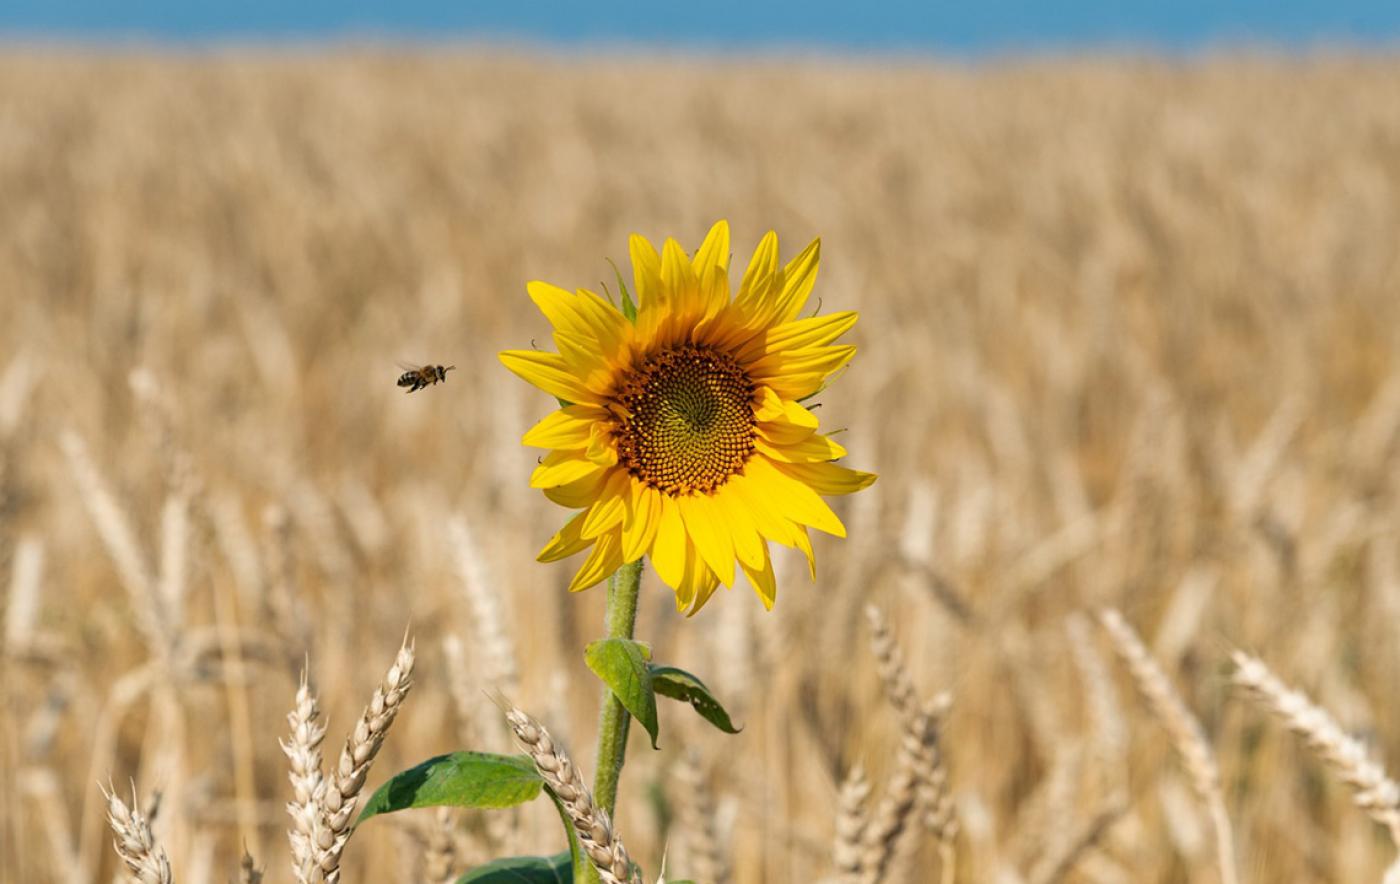 Oßmannstedter Gespräche am 4. März: Ist eine insektenfreundlichere Landwirtschaft möglich?